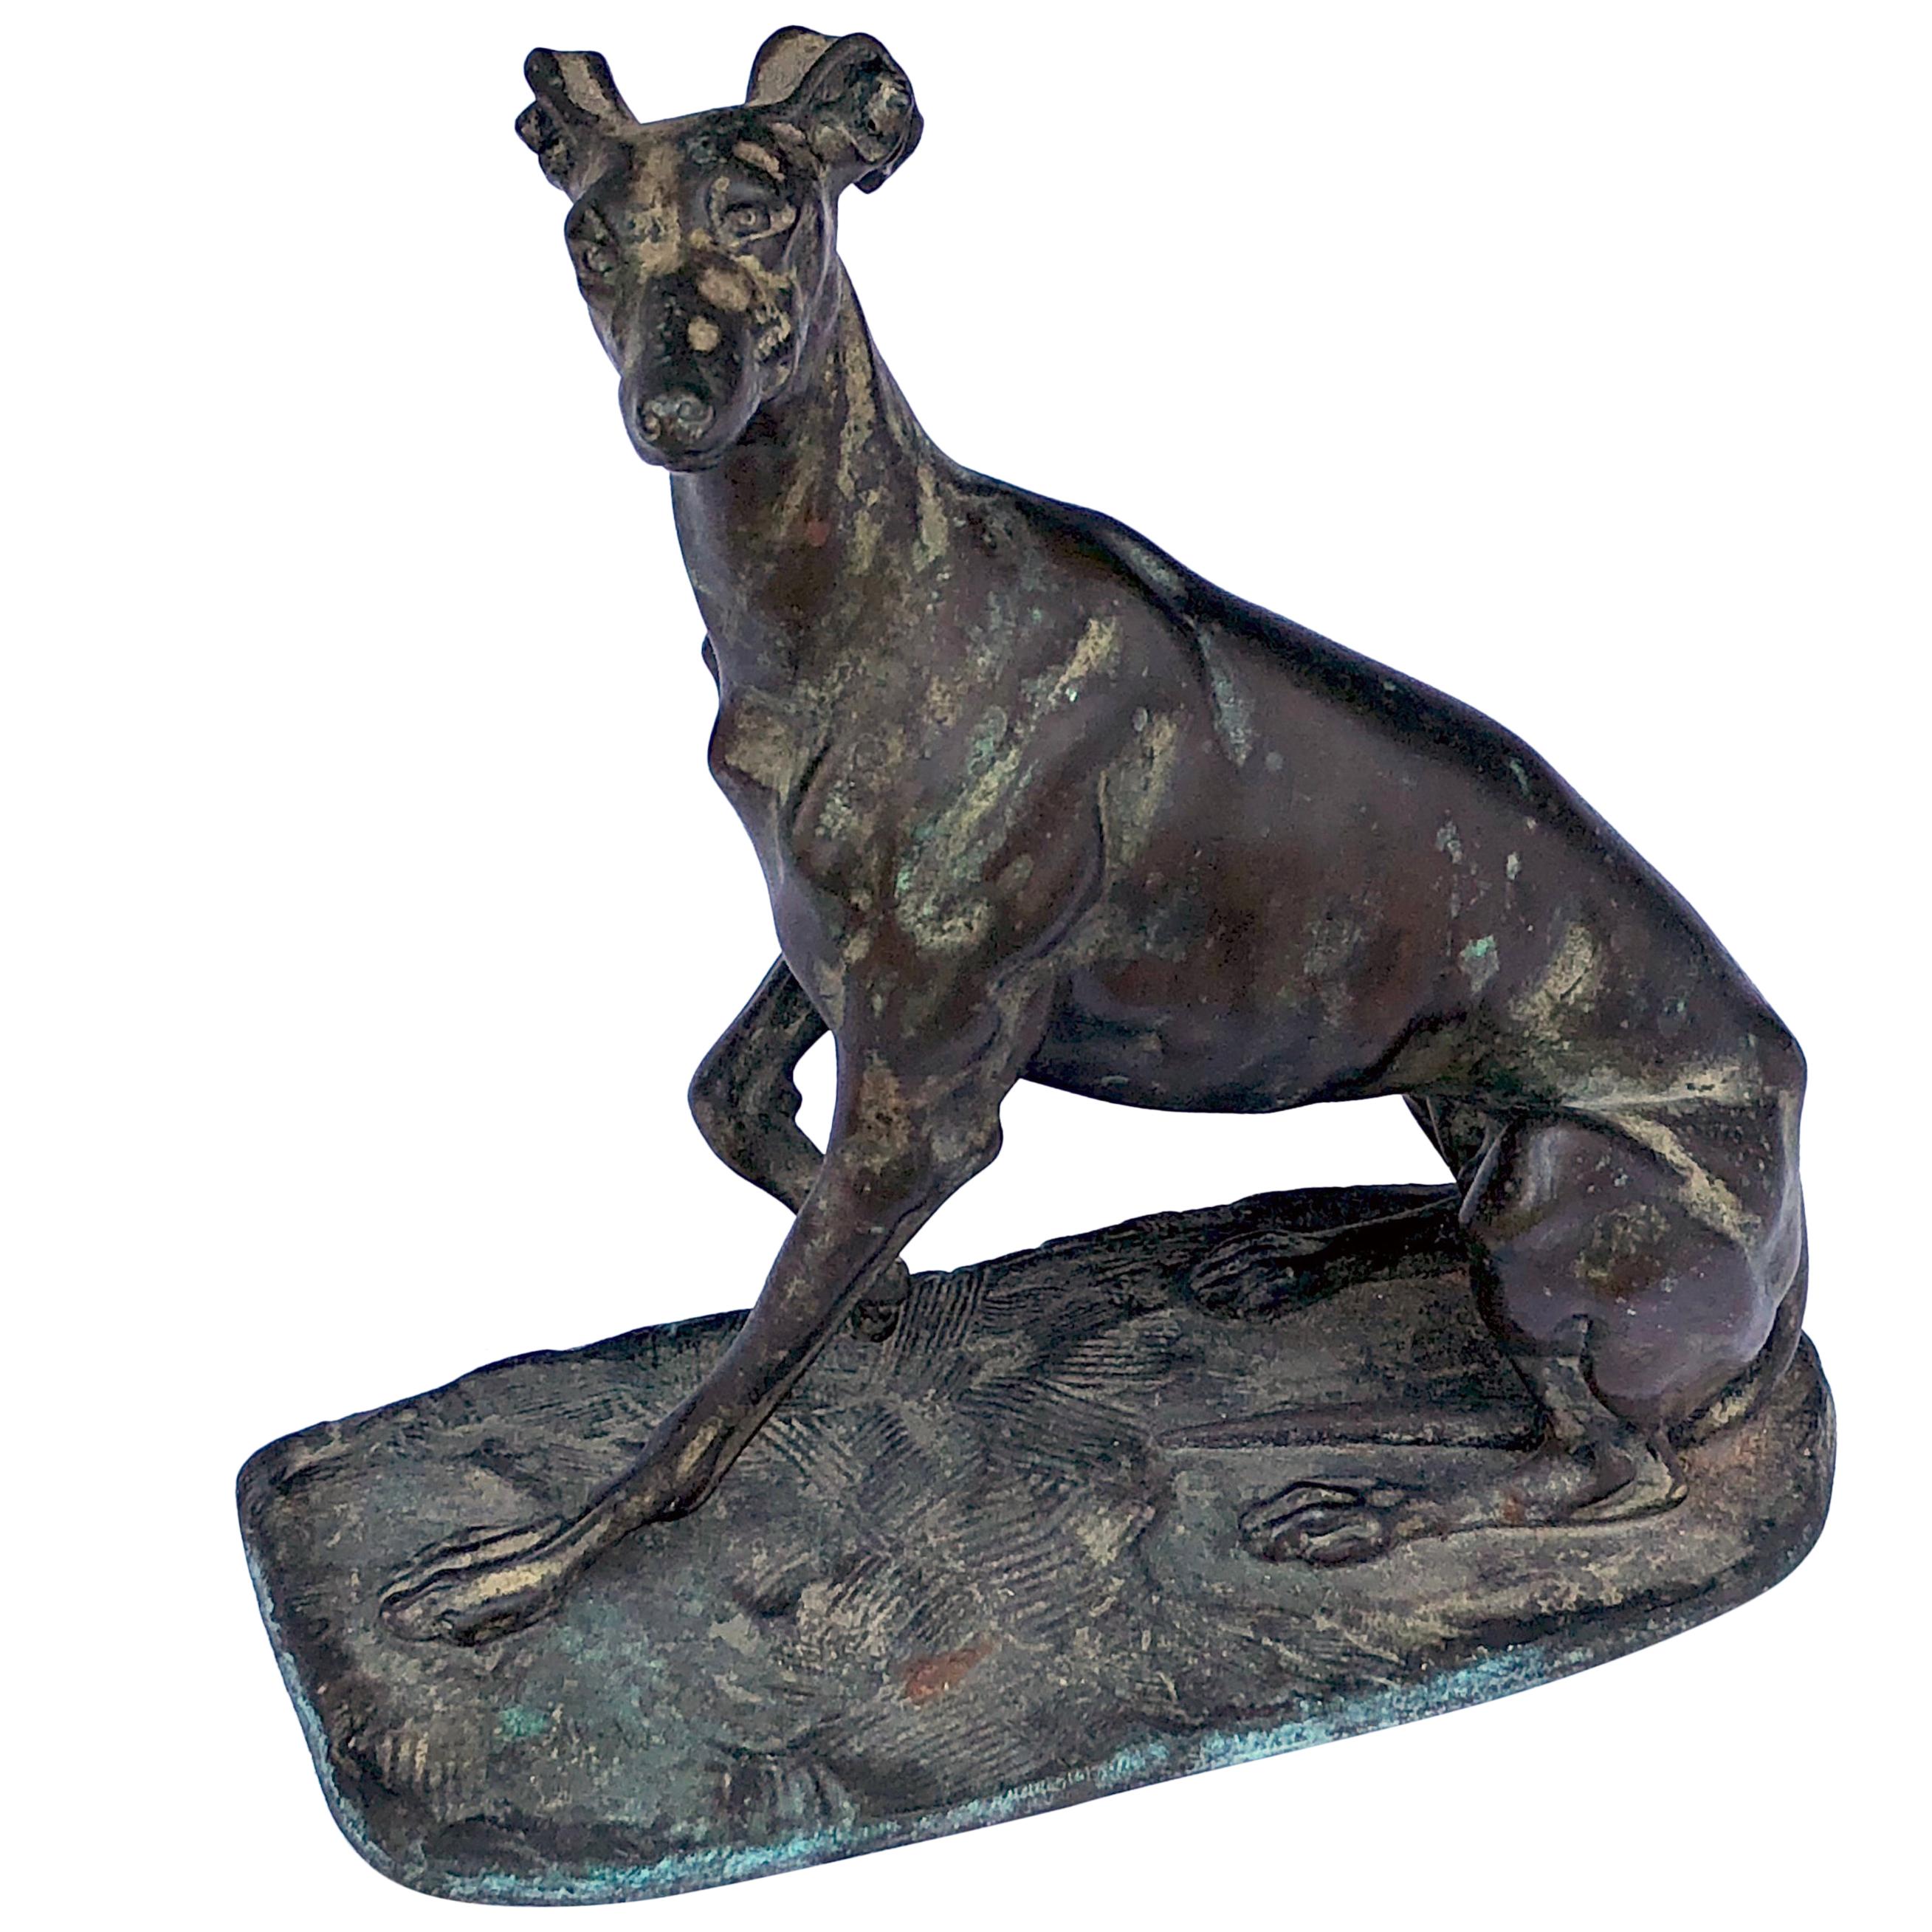 Lévrier en bronze expressif ; probablement d'Emmanuel Fremiet